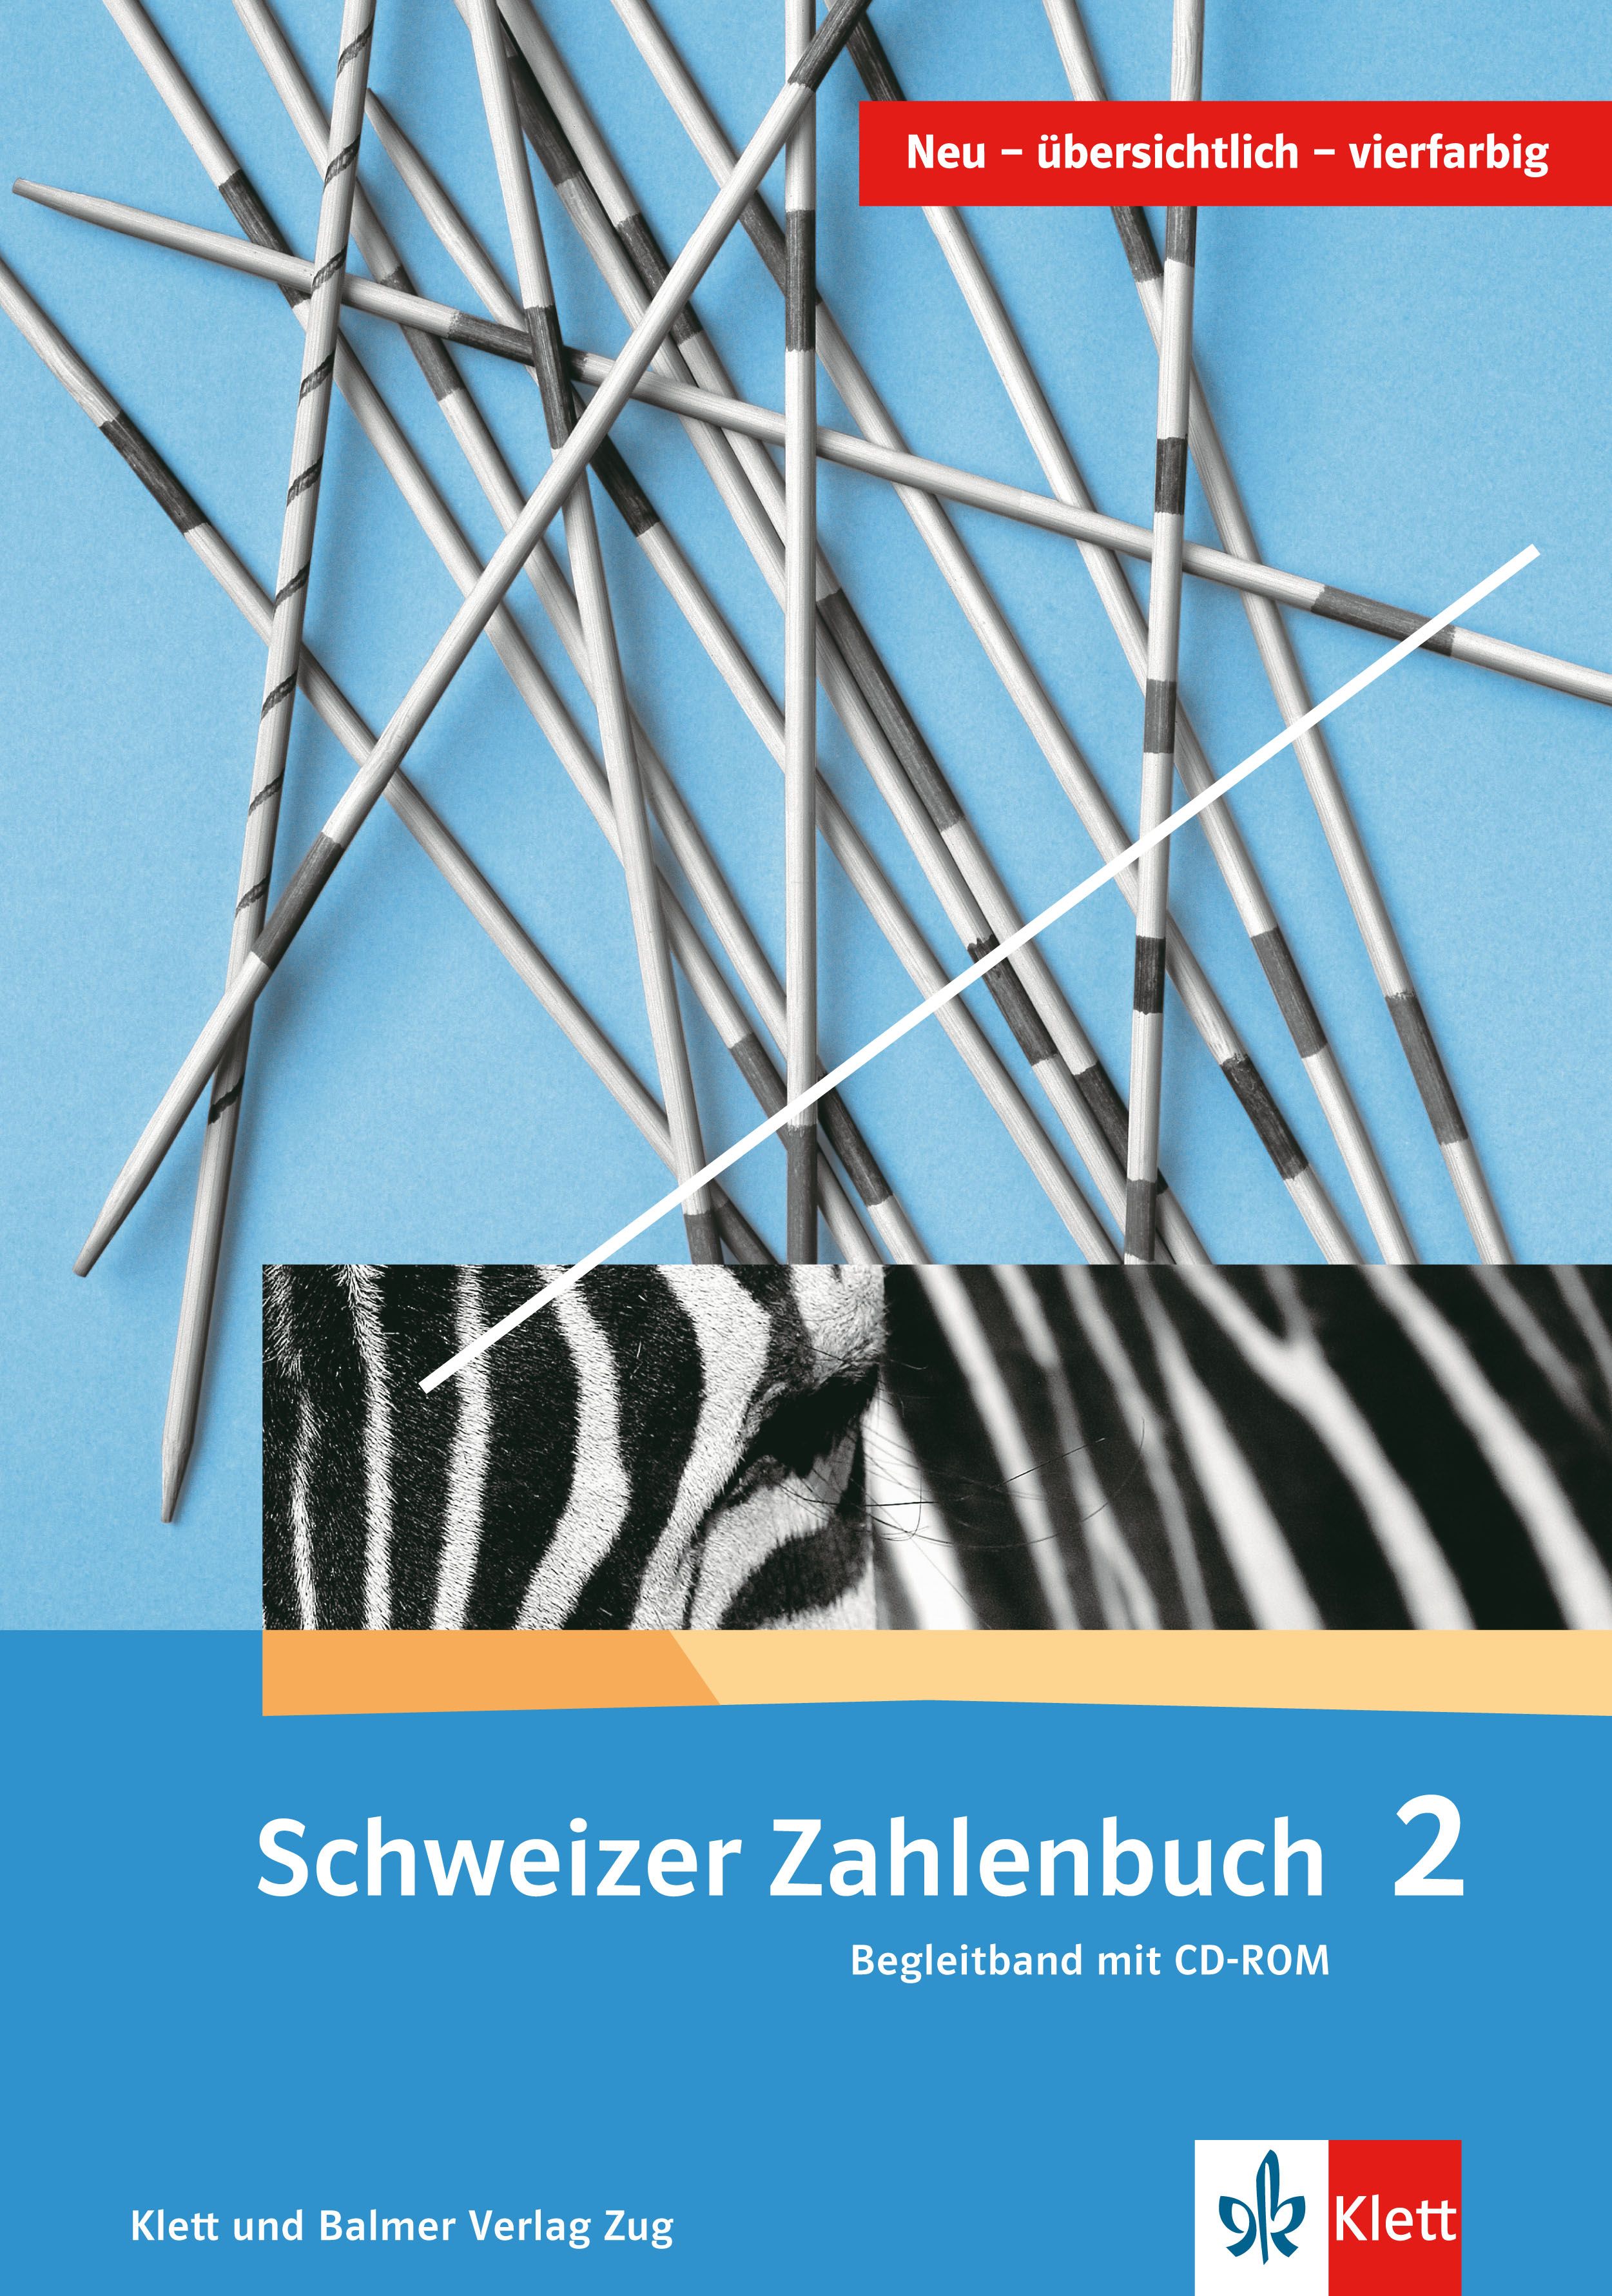 Schweizer Zahlenbuch 2, Begleitband inkl. CDR, ALTE VERSION!